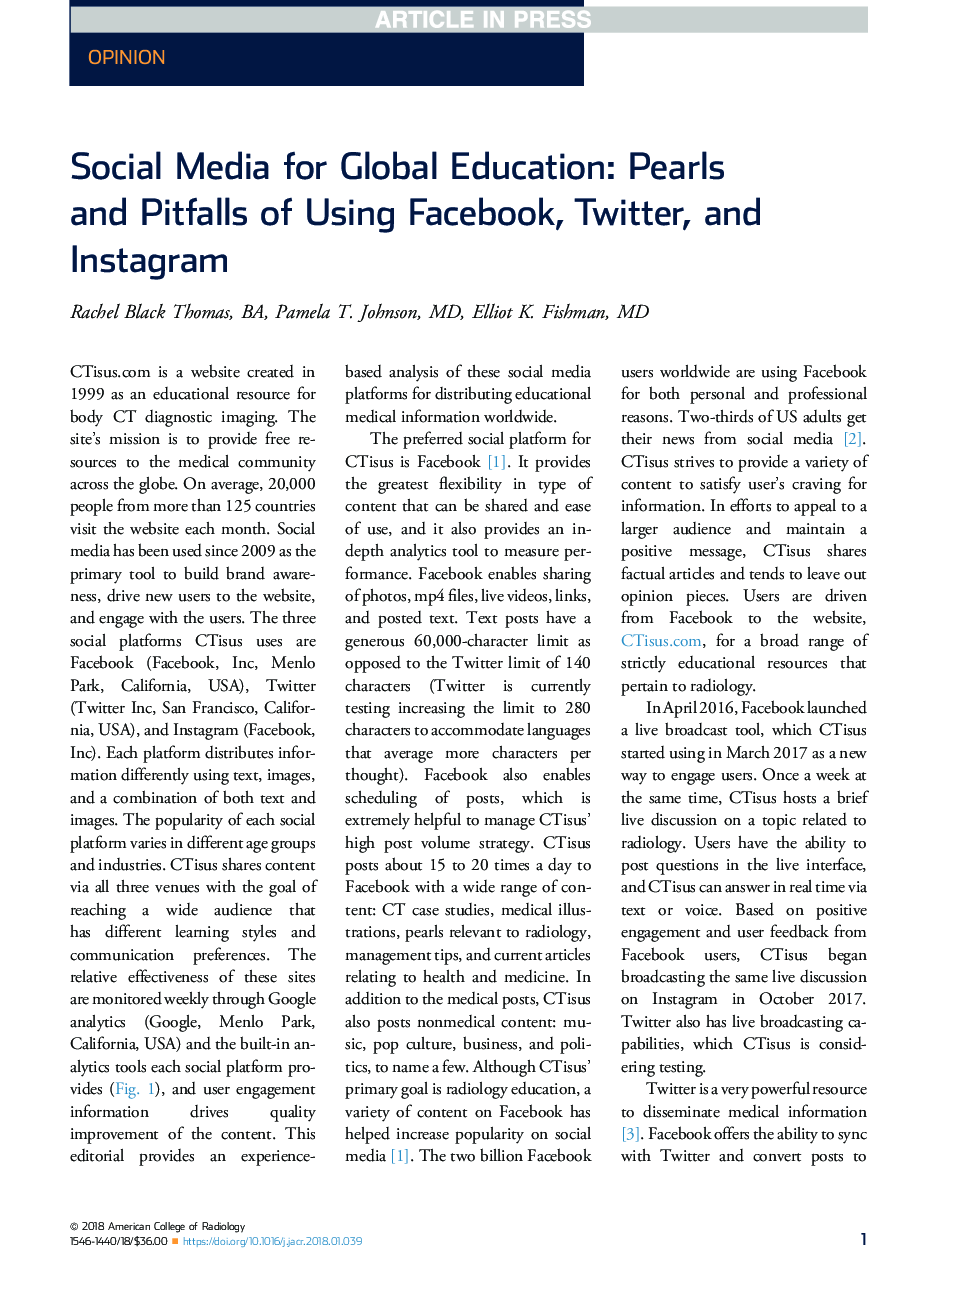 رسانه های اجتماعی برای آموزش جهانی: مروارید و مشکلات استفاده از فیس بوک، توییتر و نمایش مشخصات عمومی